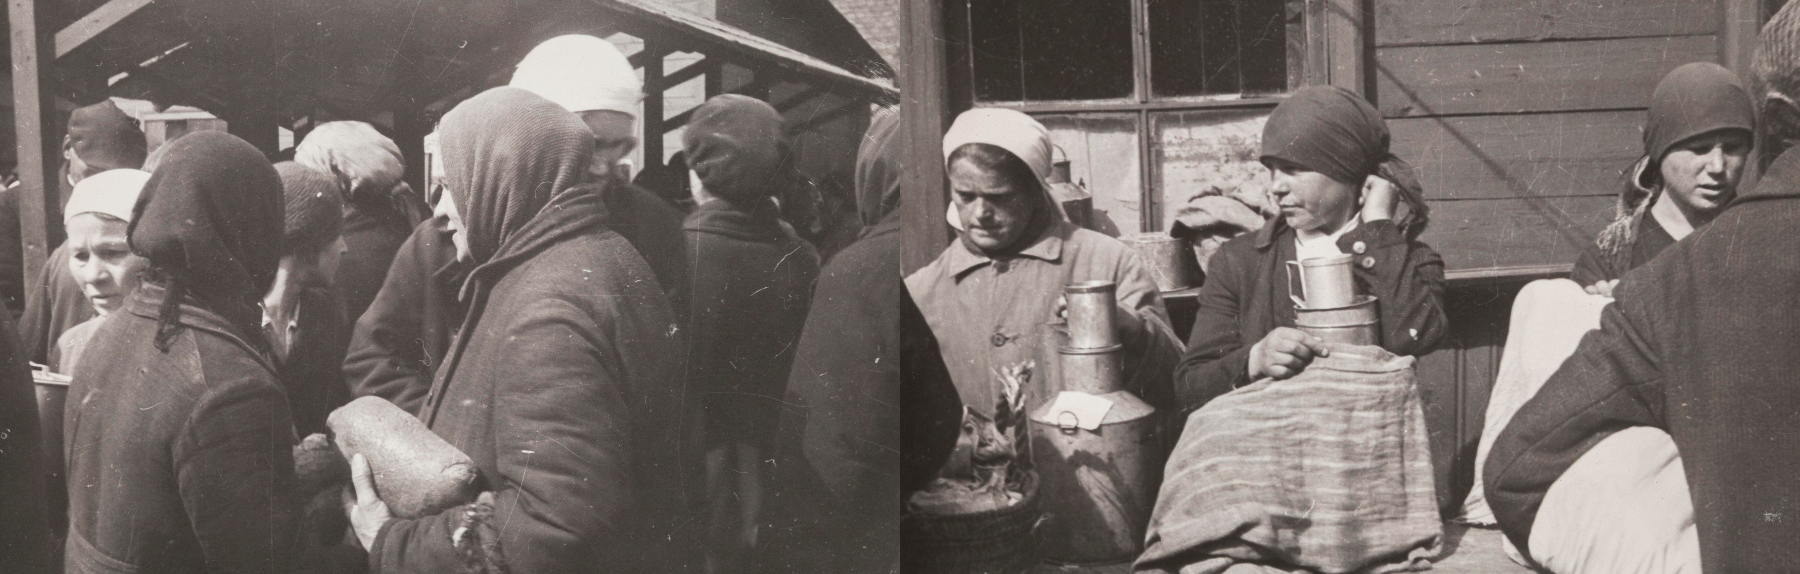 Torielämää ja inkeriläisiä maidonmyyjiä Leningradissa neuvostoaikana. SKS KRA, Inkerin Liiton kokoelma. CC BY 4.0